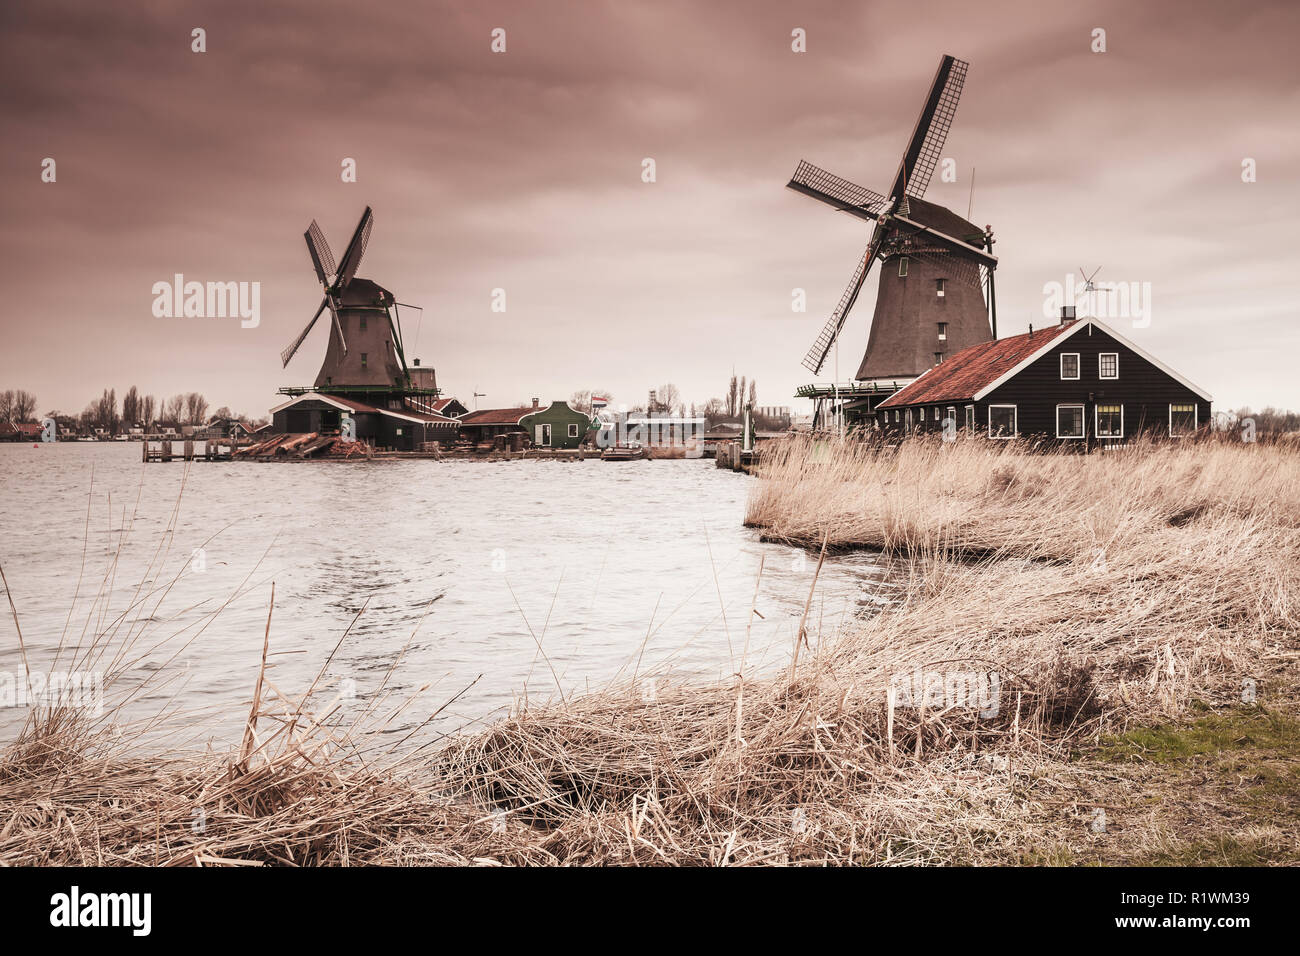 Holz- Windmühlen auf Fluss Zaan Küste, Zaanse Schans Stadt, beliebten touristischen Attraktionen der Niederlande. Vorort von Amsterdam. Foto mit warmen gradien Stockfoto